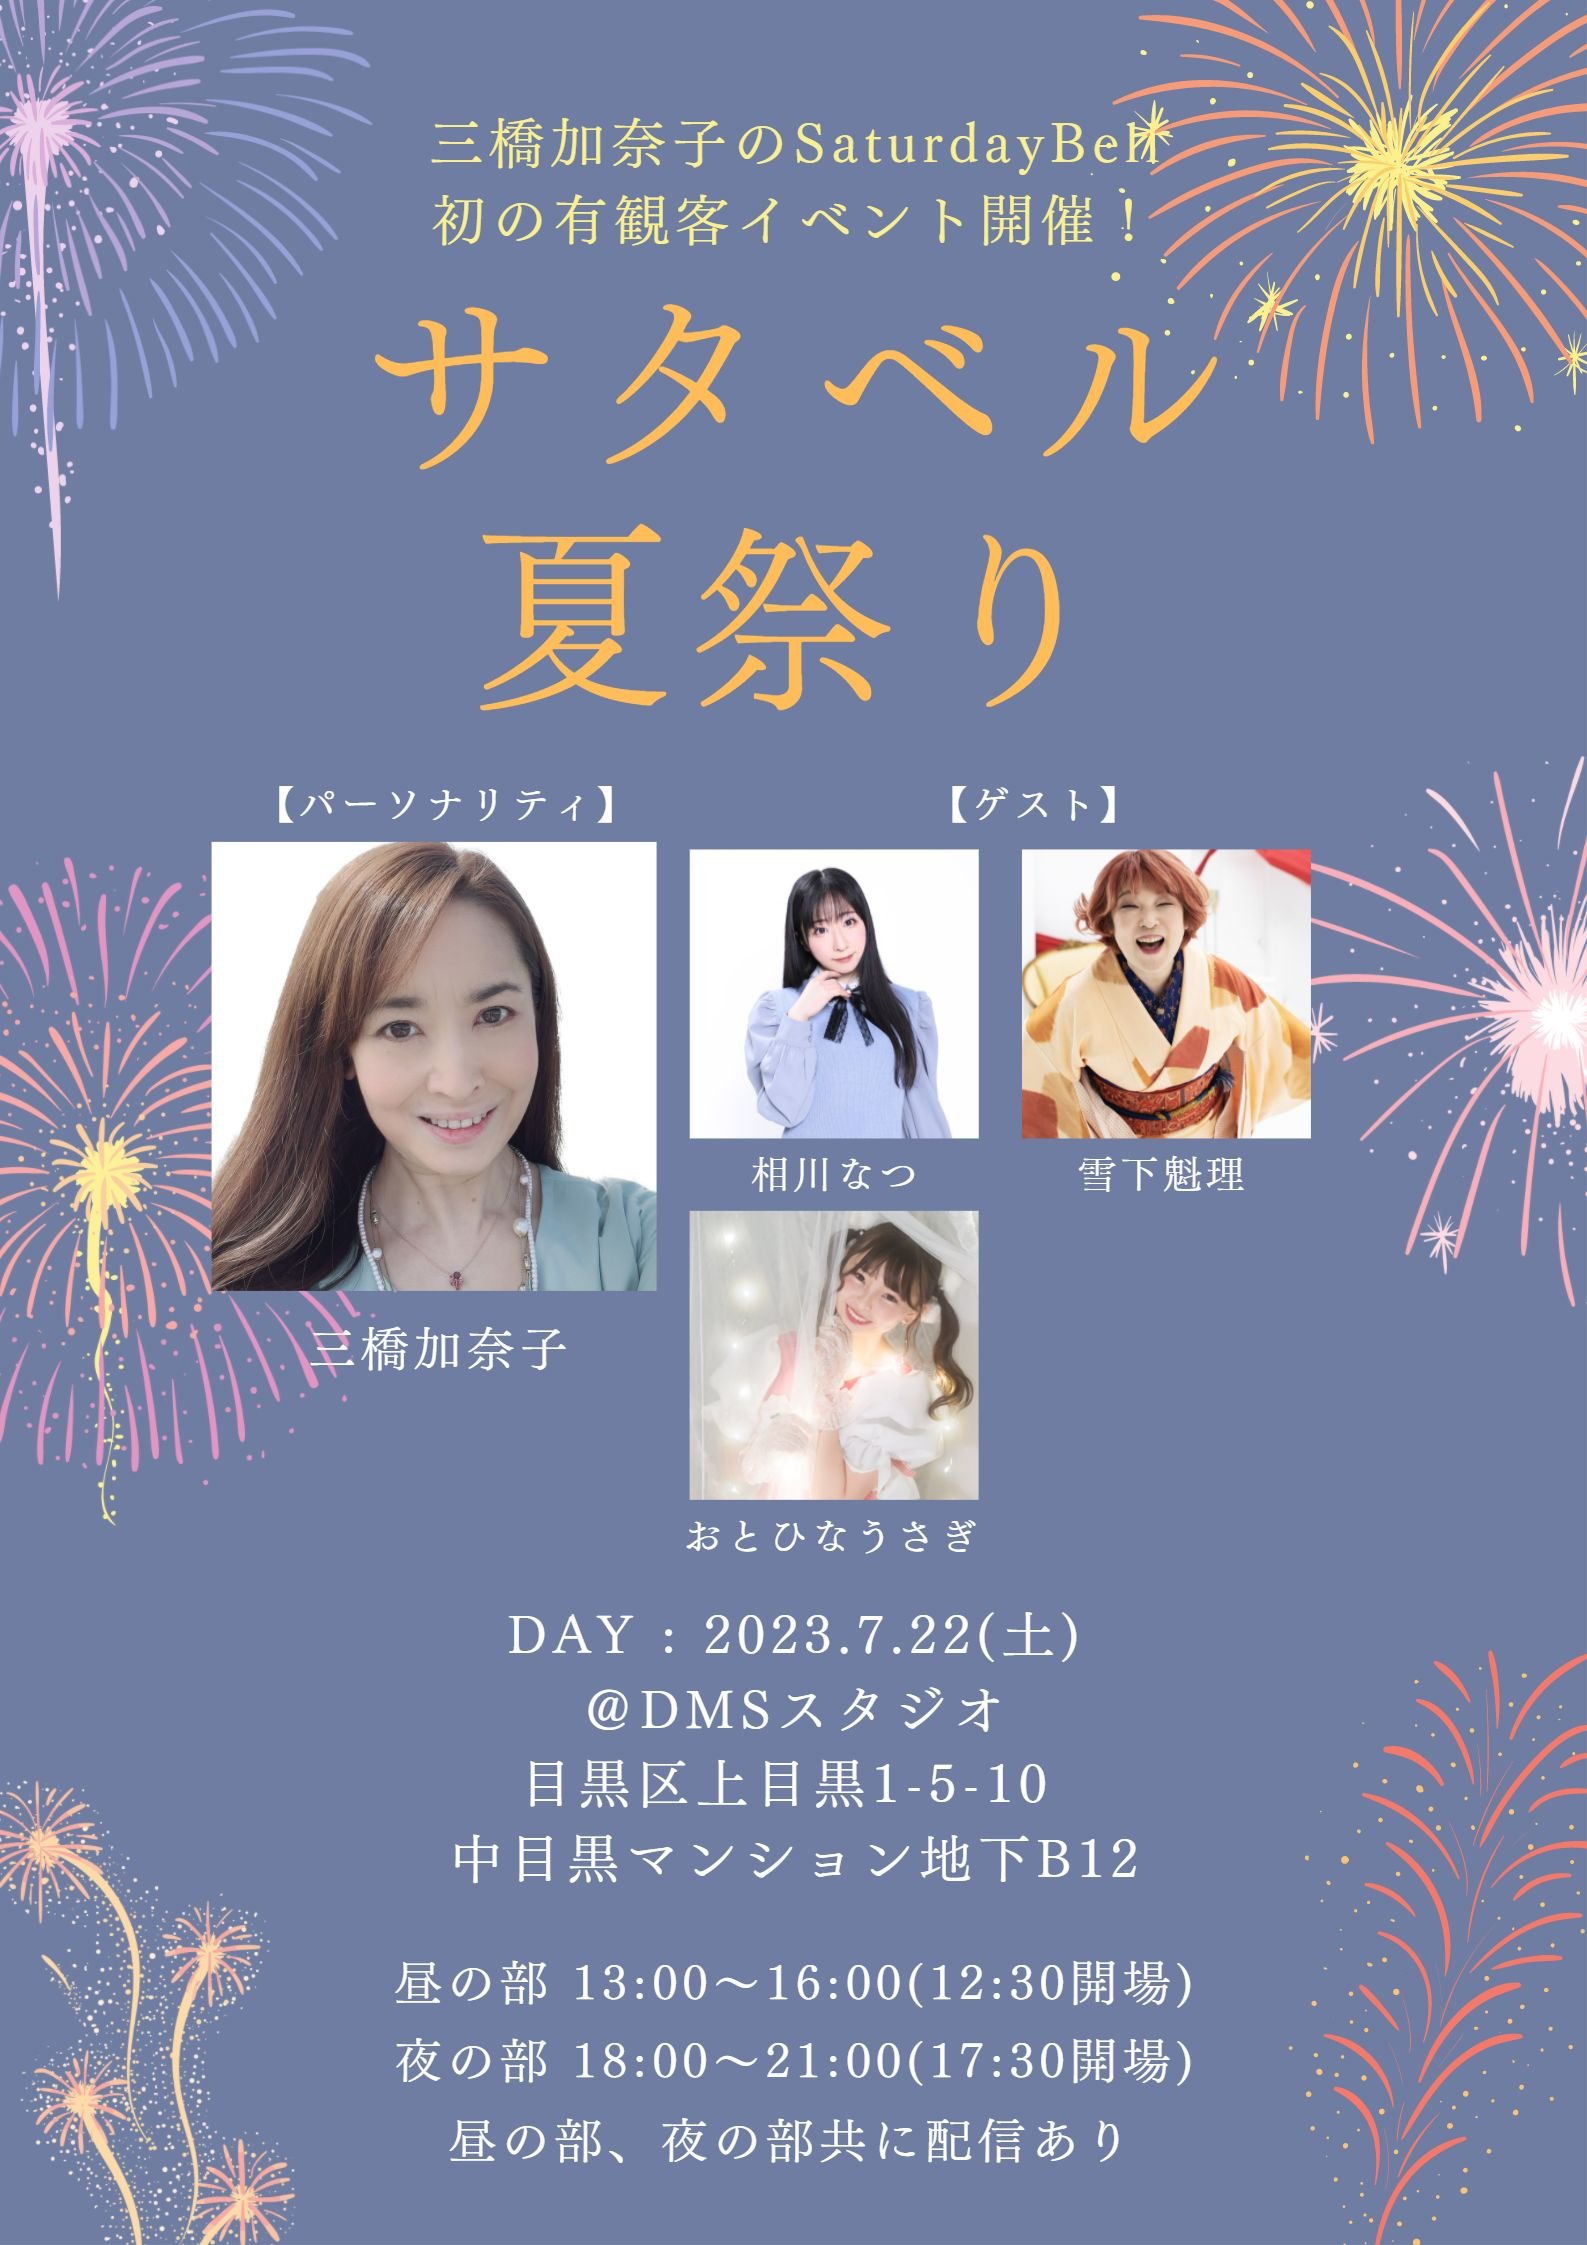 7月22日(土) 三橋加奈子のSaturday Bell presents「サタベル夏祭り！」昼の部に出演します!!!